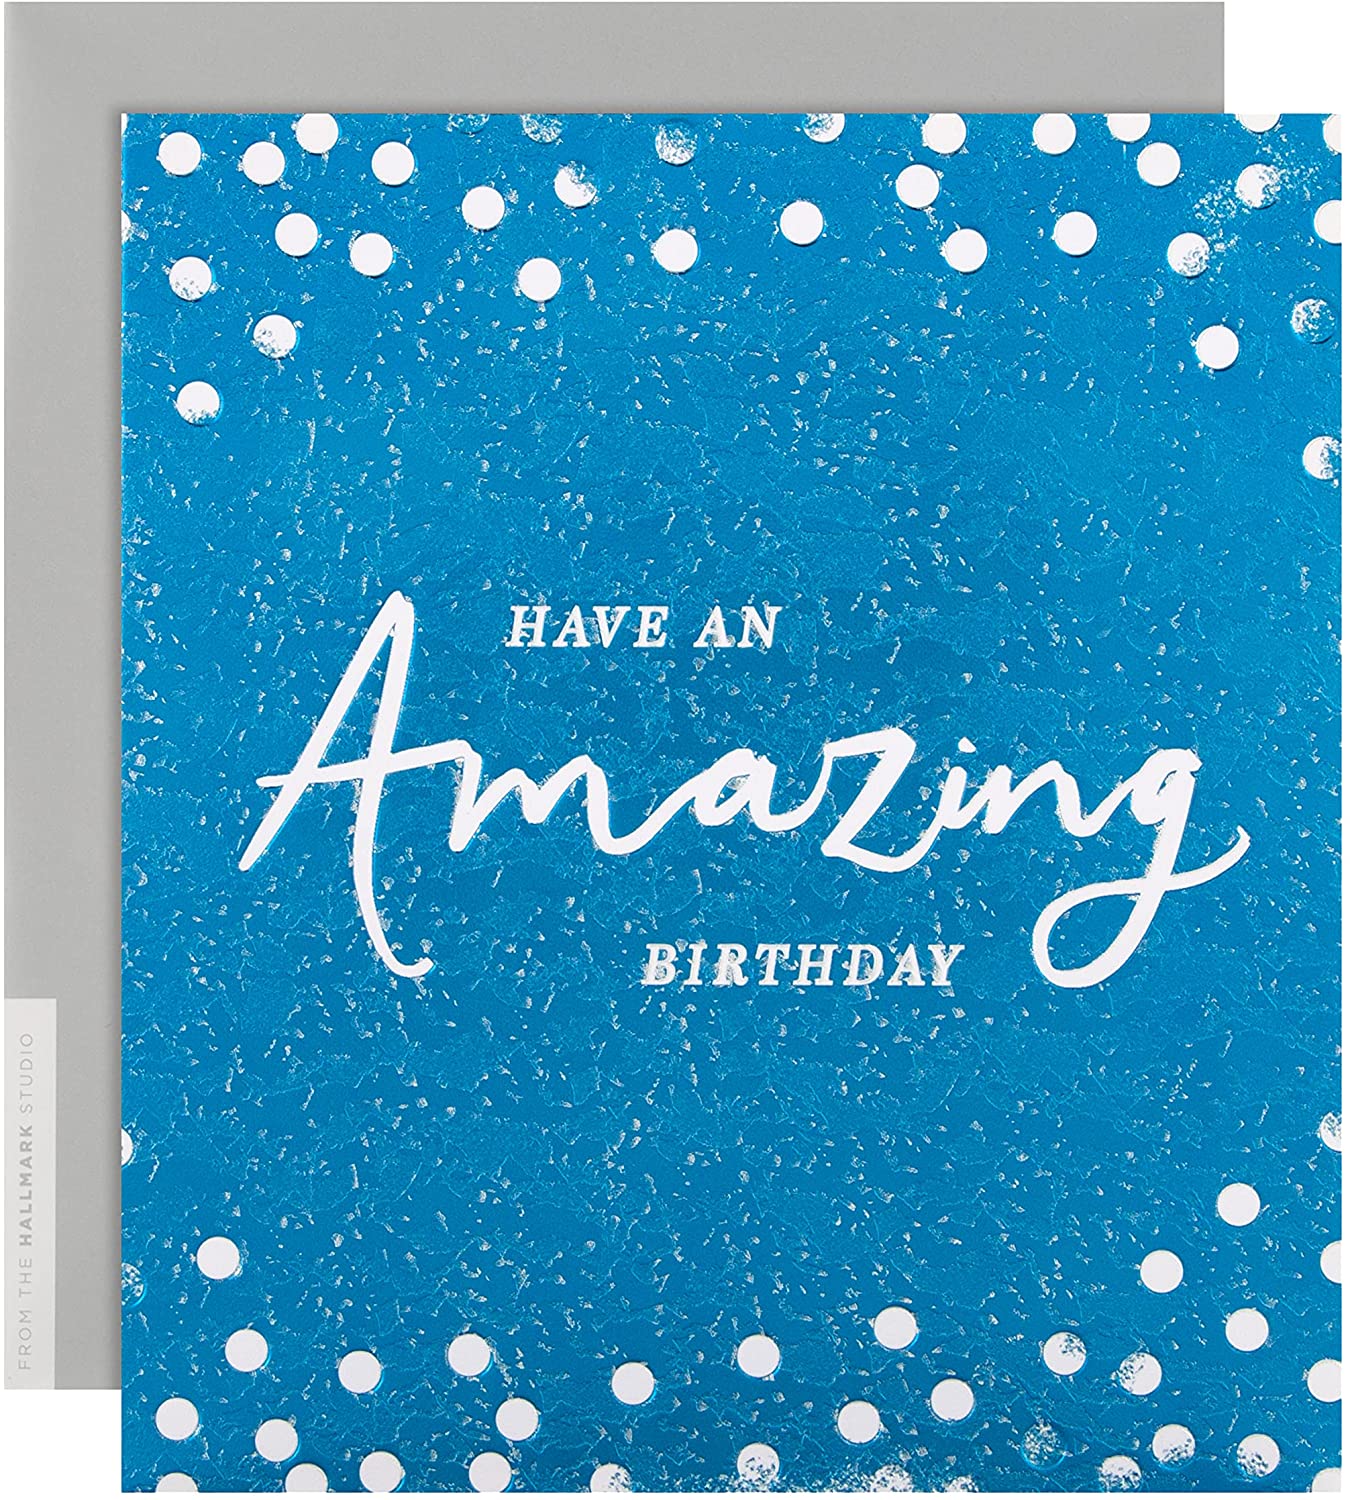 Hallmark ''Have An Amazing Birthday'' Card RRP £3.40 CLEARANCE XL £1.99